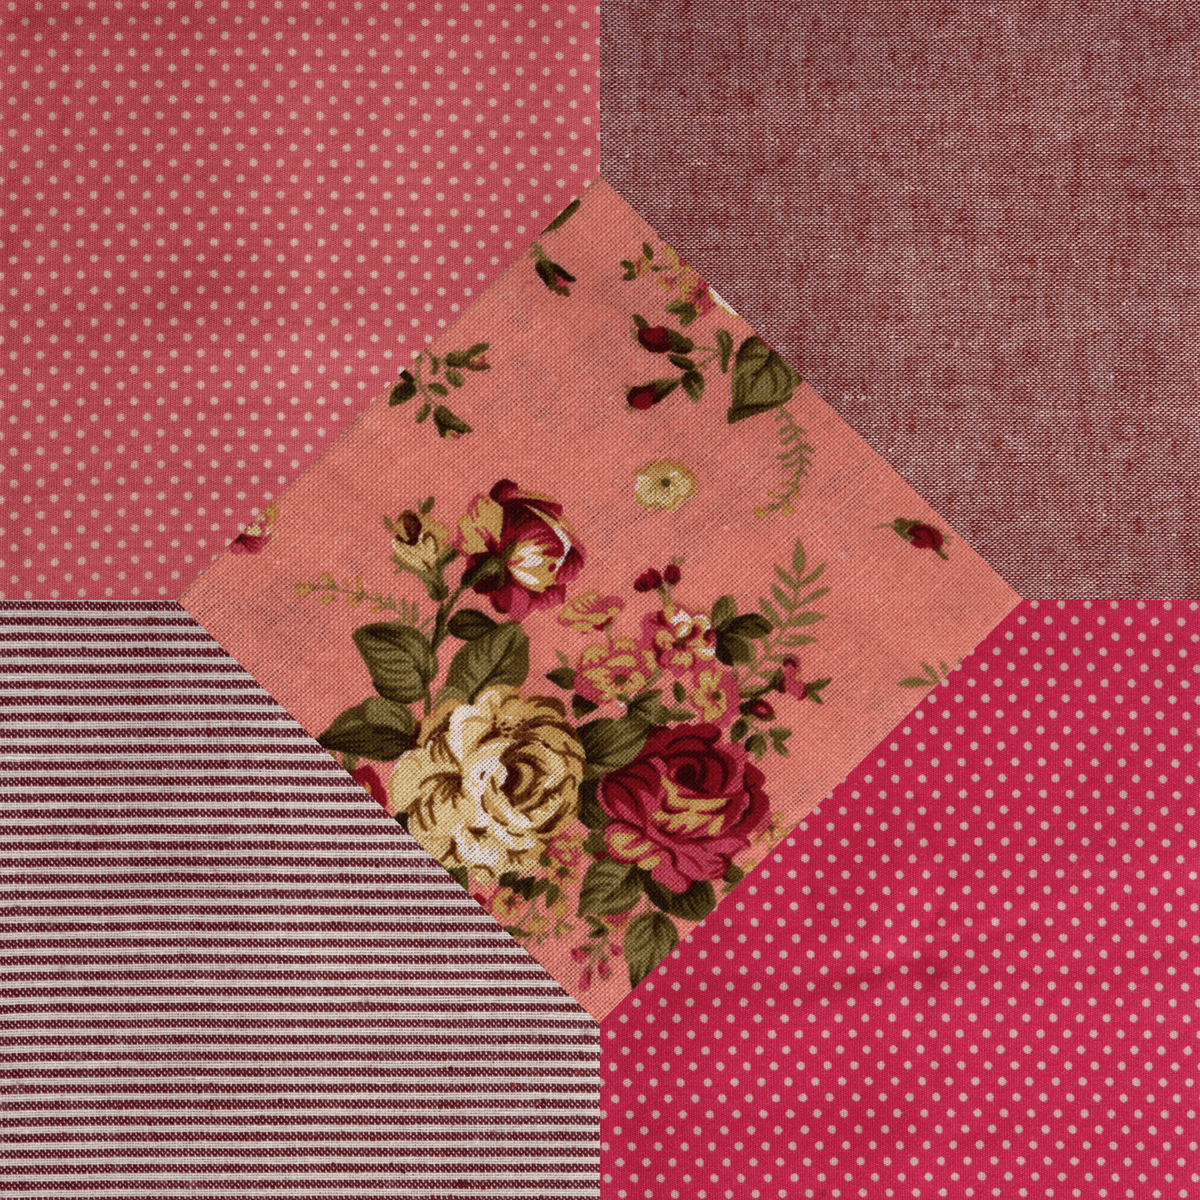 Cotton linen Rosie quilt fabrics fat quarter bundle 5 pack: polkadot spots, stripes, plain.